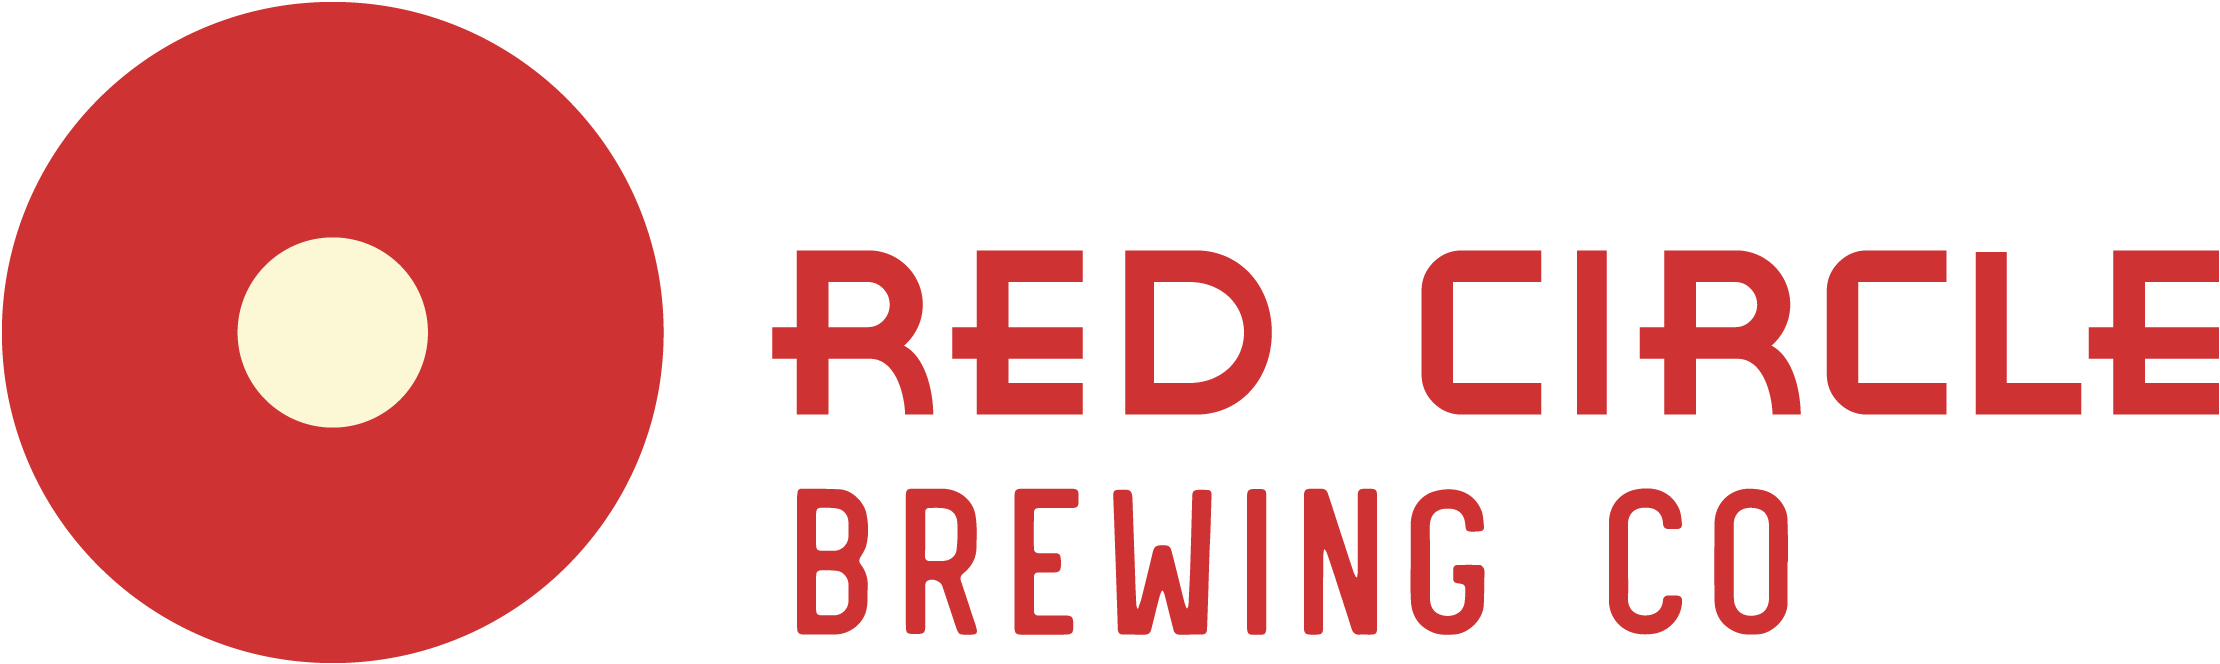 Orange Red Circle Logo - Red Circle Brewing Co. | About